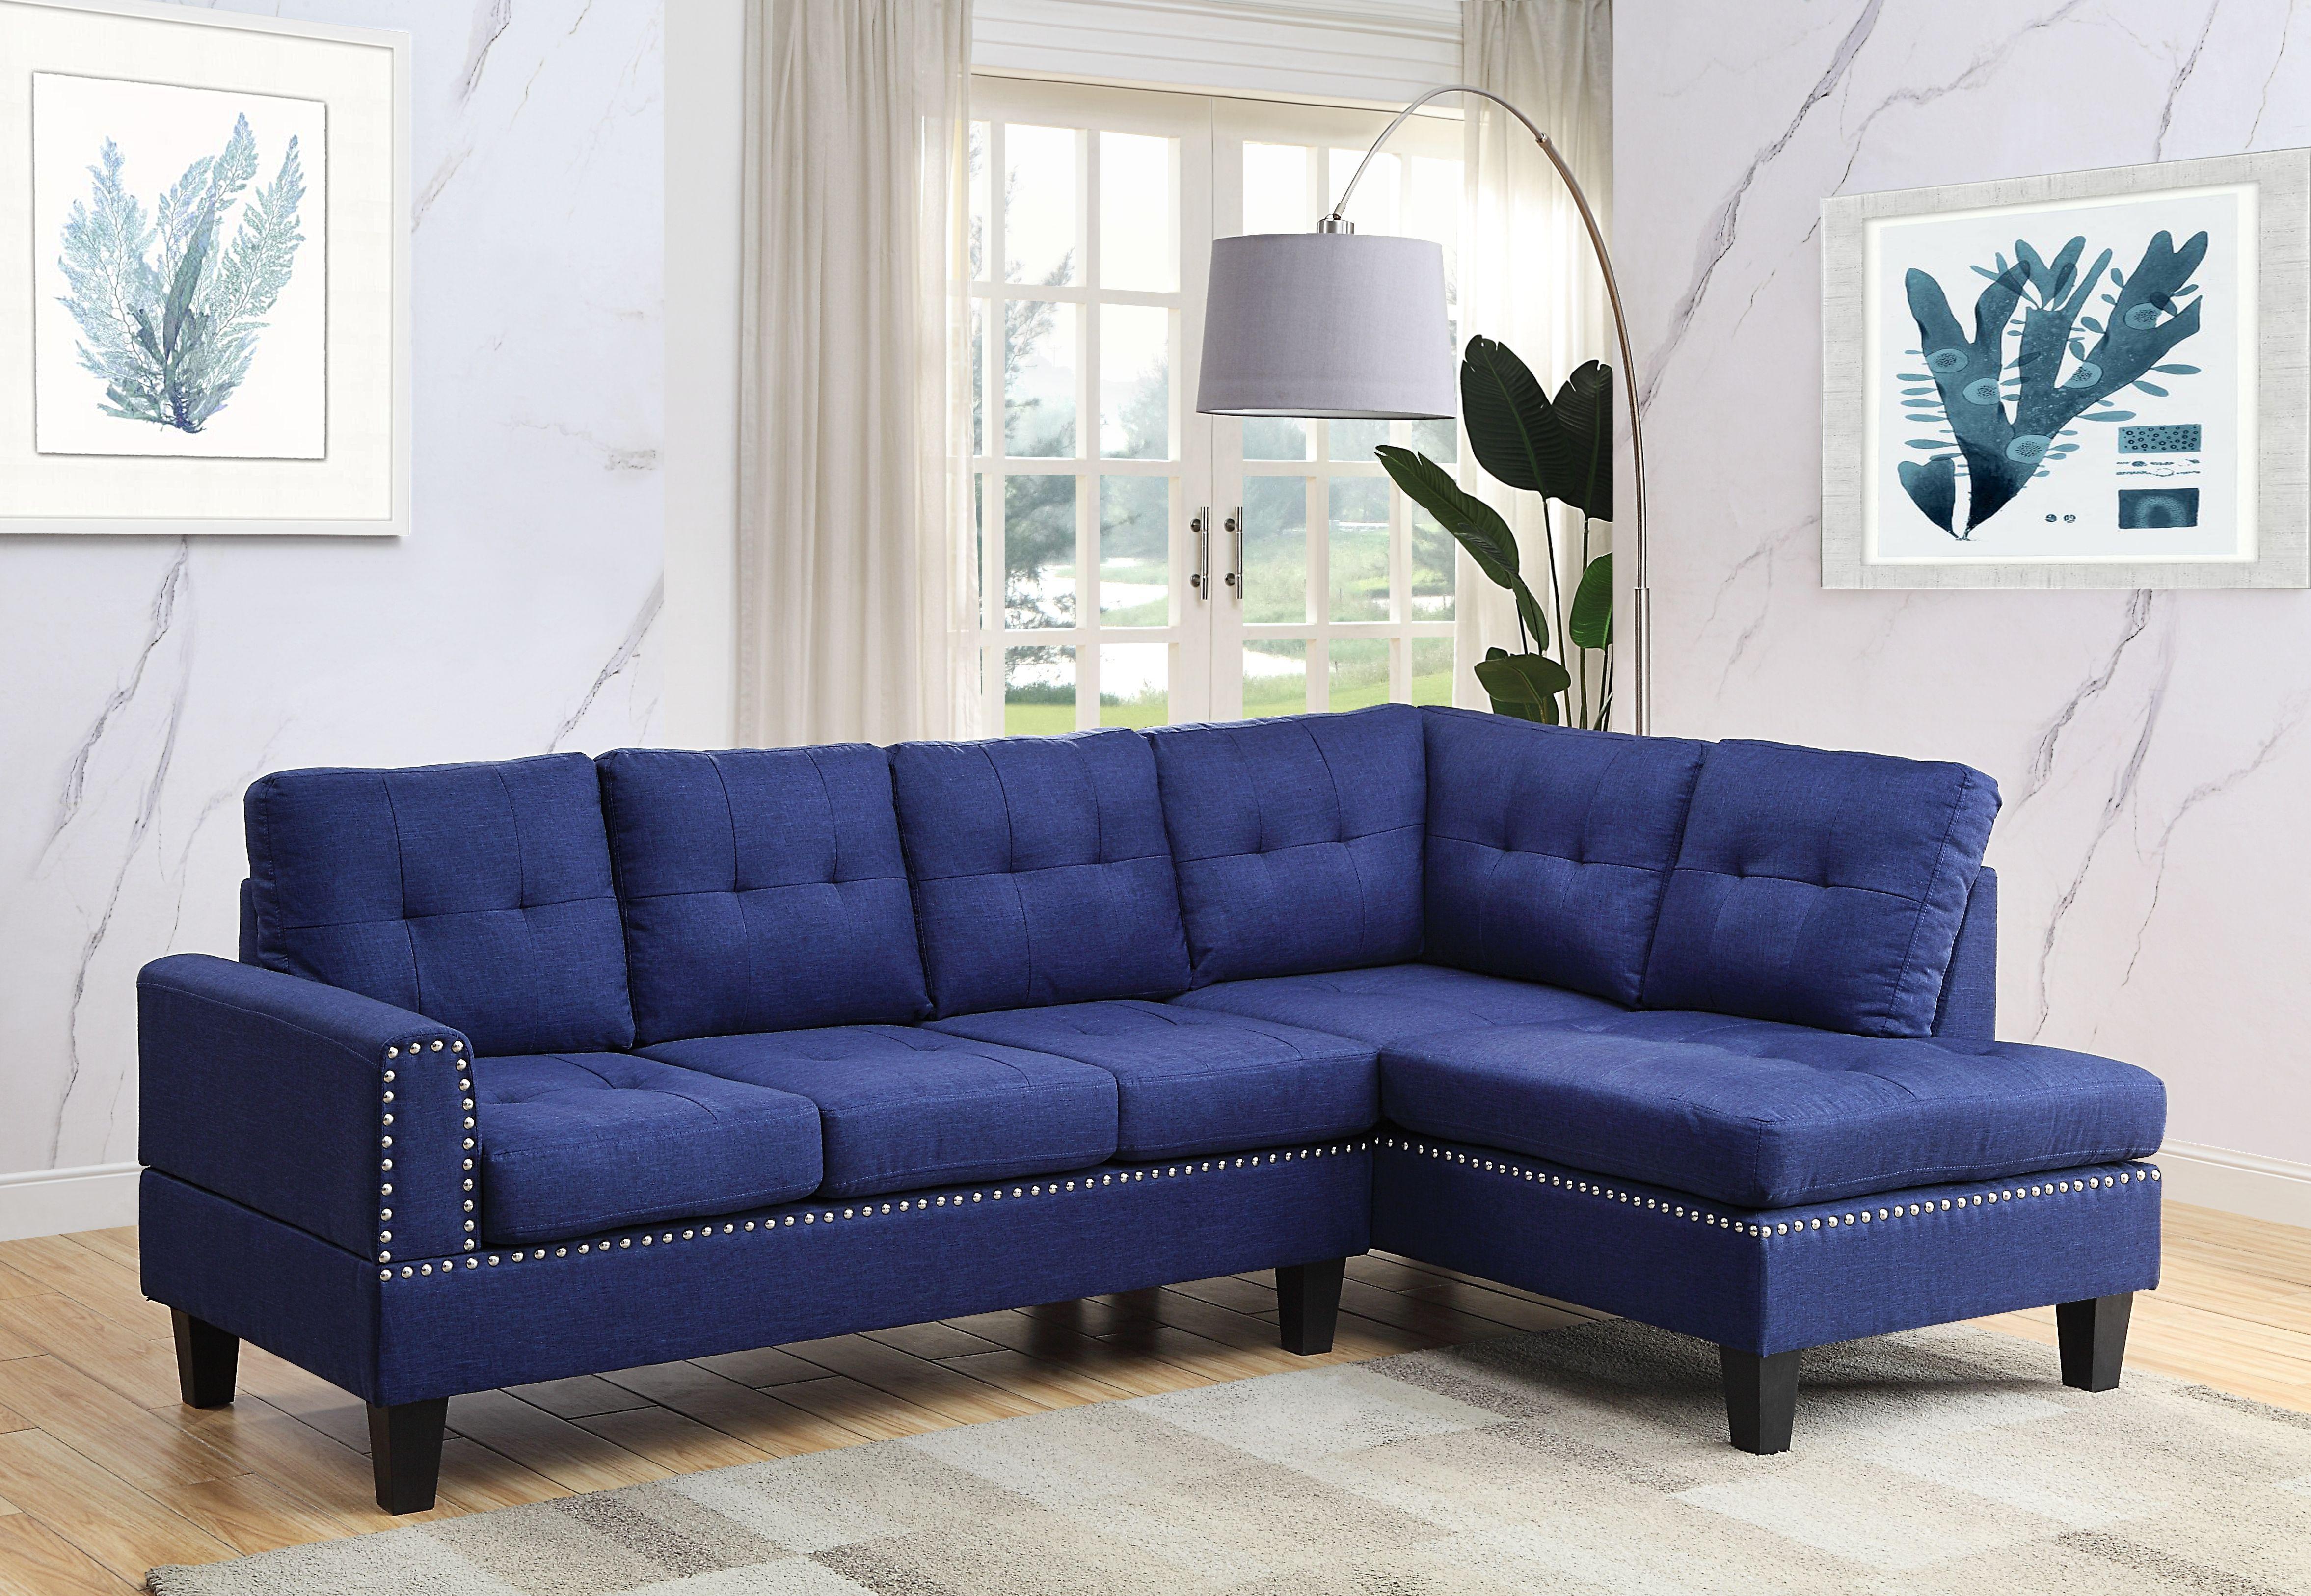 Modern, Classic Sectional Sofa Jeimmur 56480-3pcs in Blue Linen